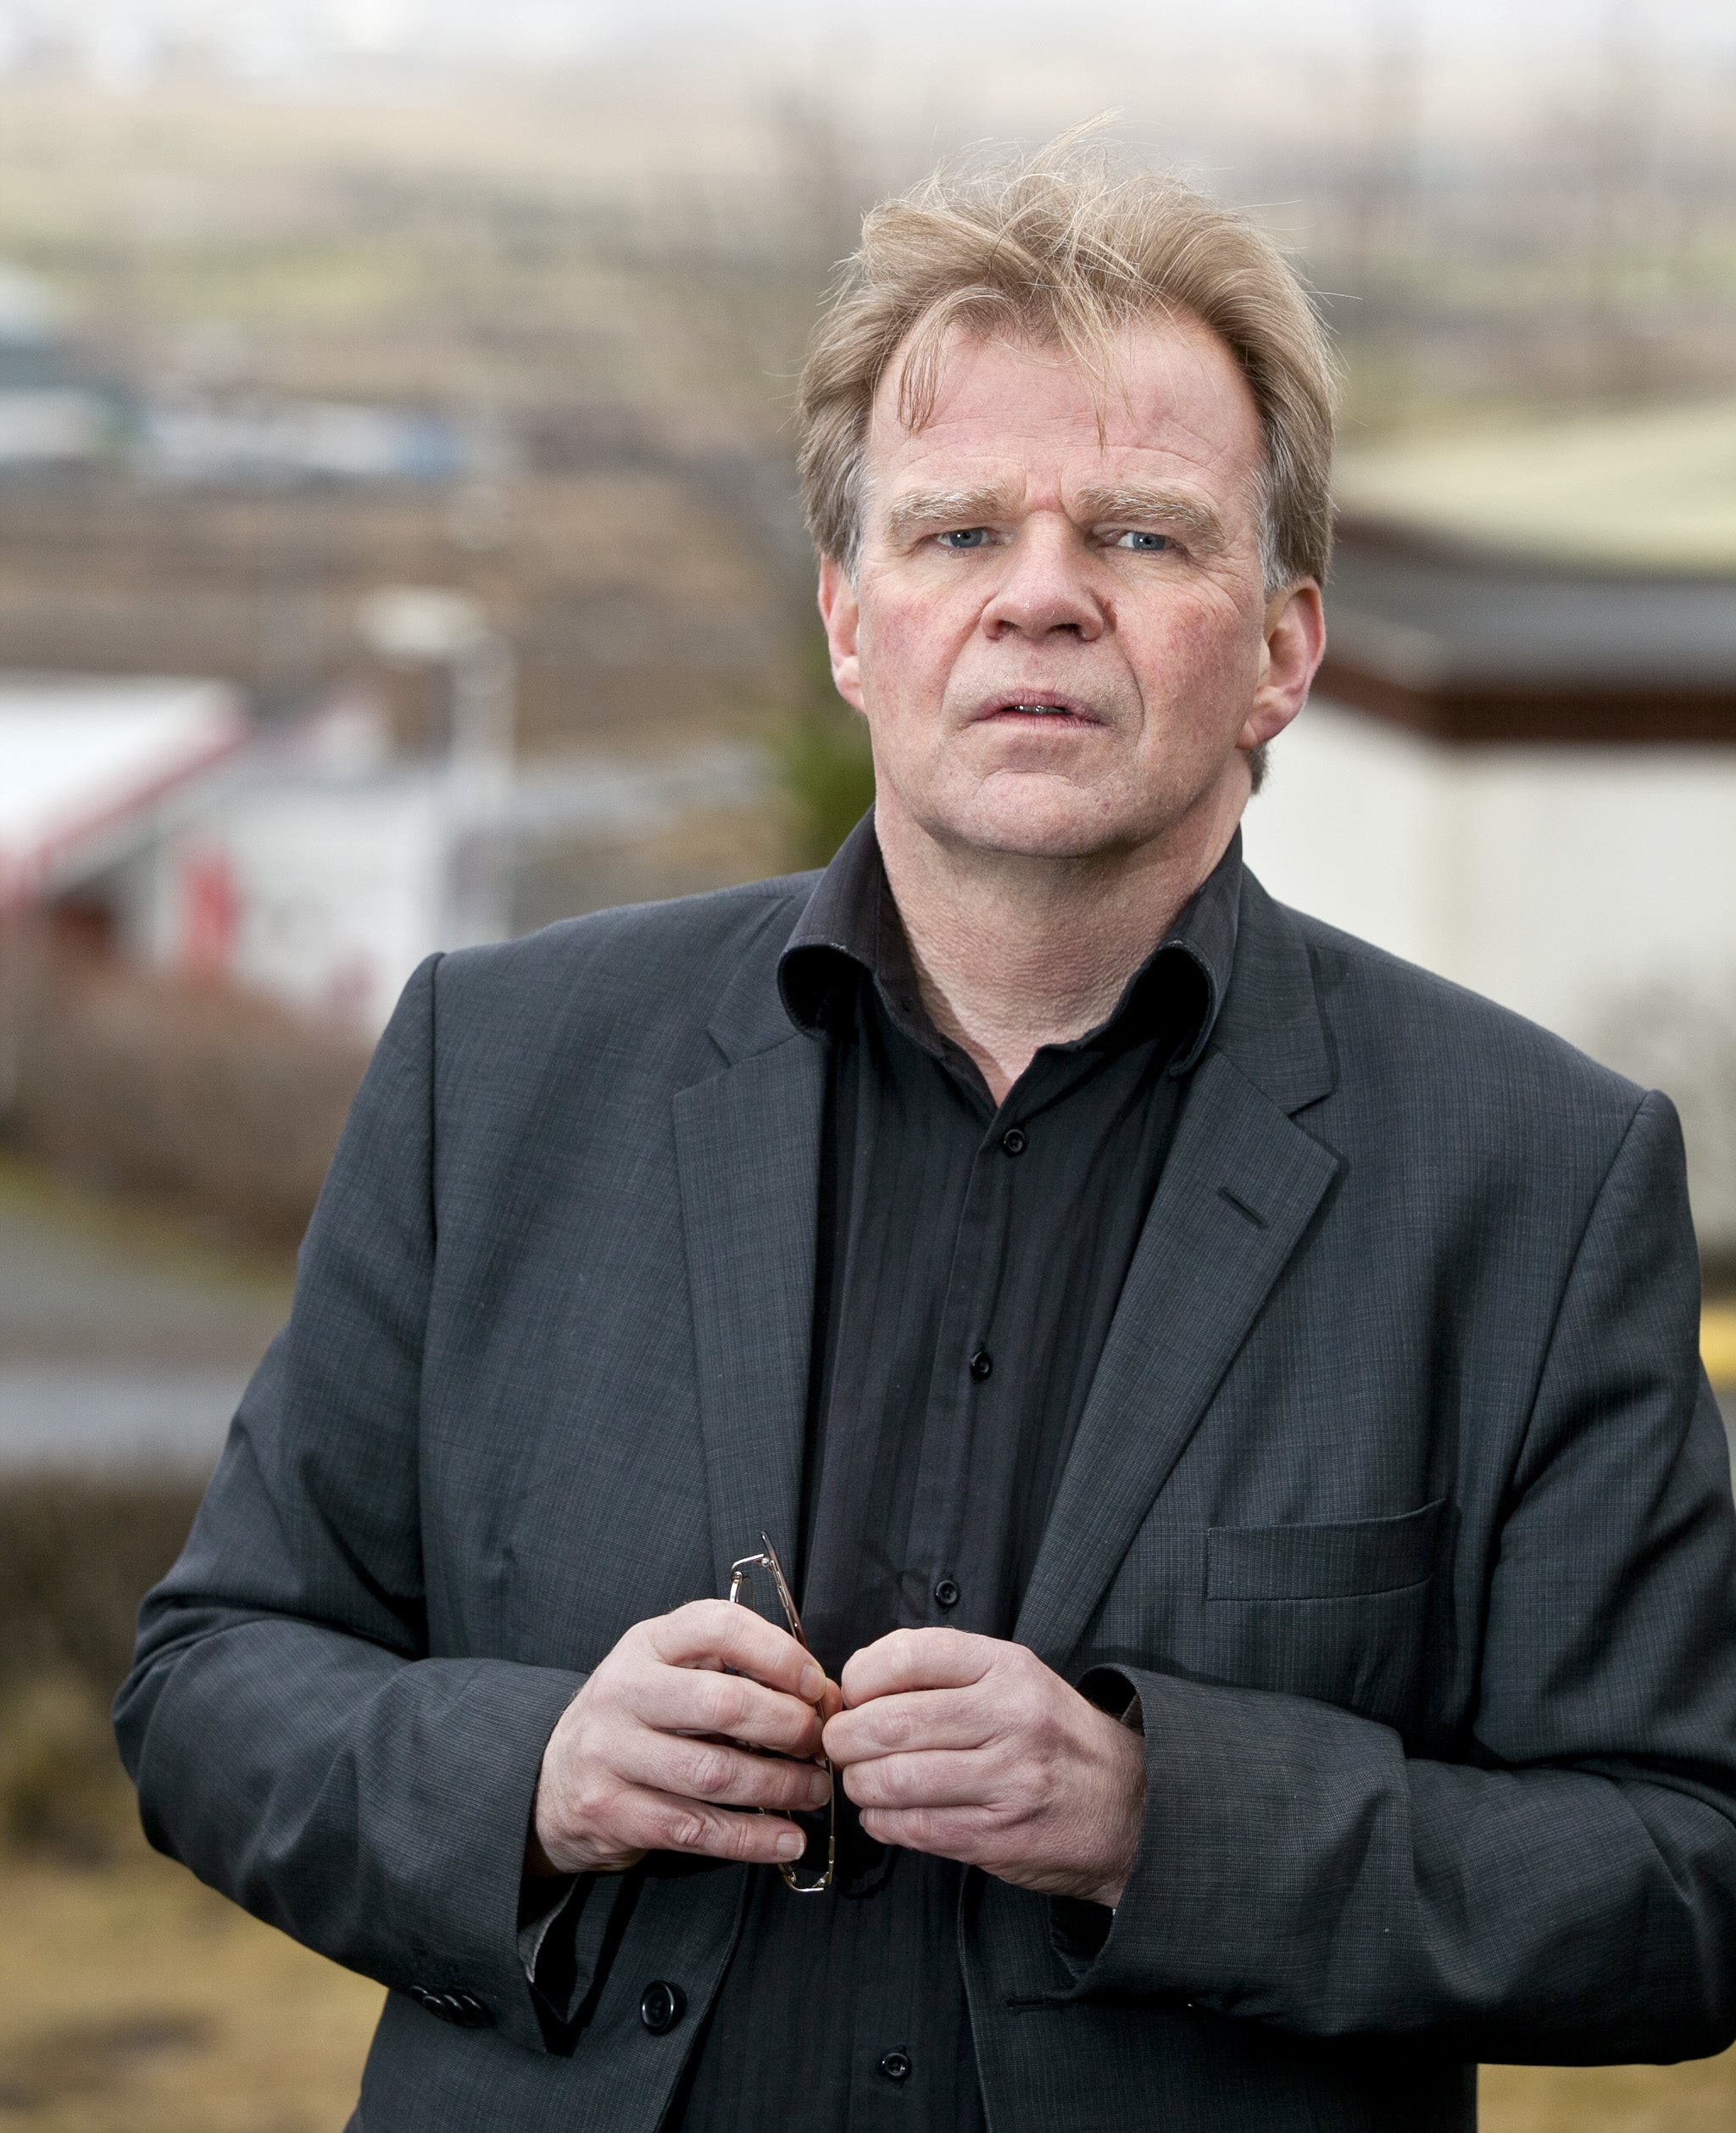 Einar Már Guðmundsson, pasfotos, store forfattere, universets engle, island, samlede værker, lindhardt og ringhof, nordisk råds litteraturpris